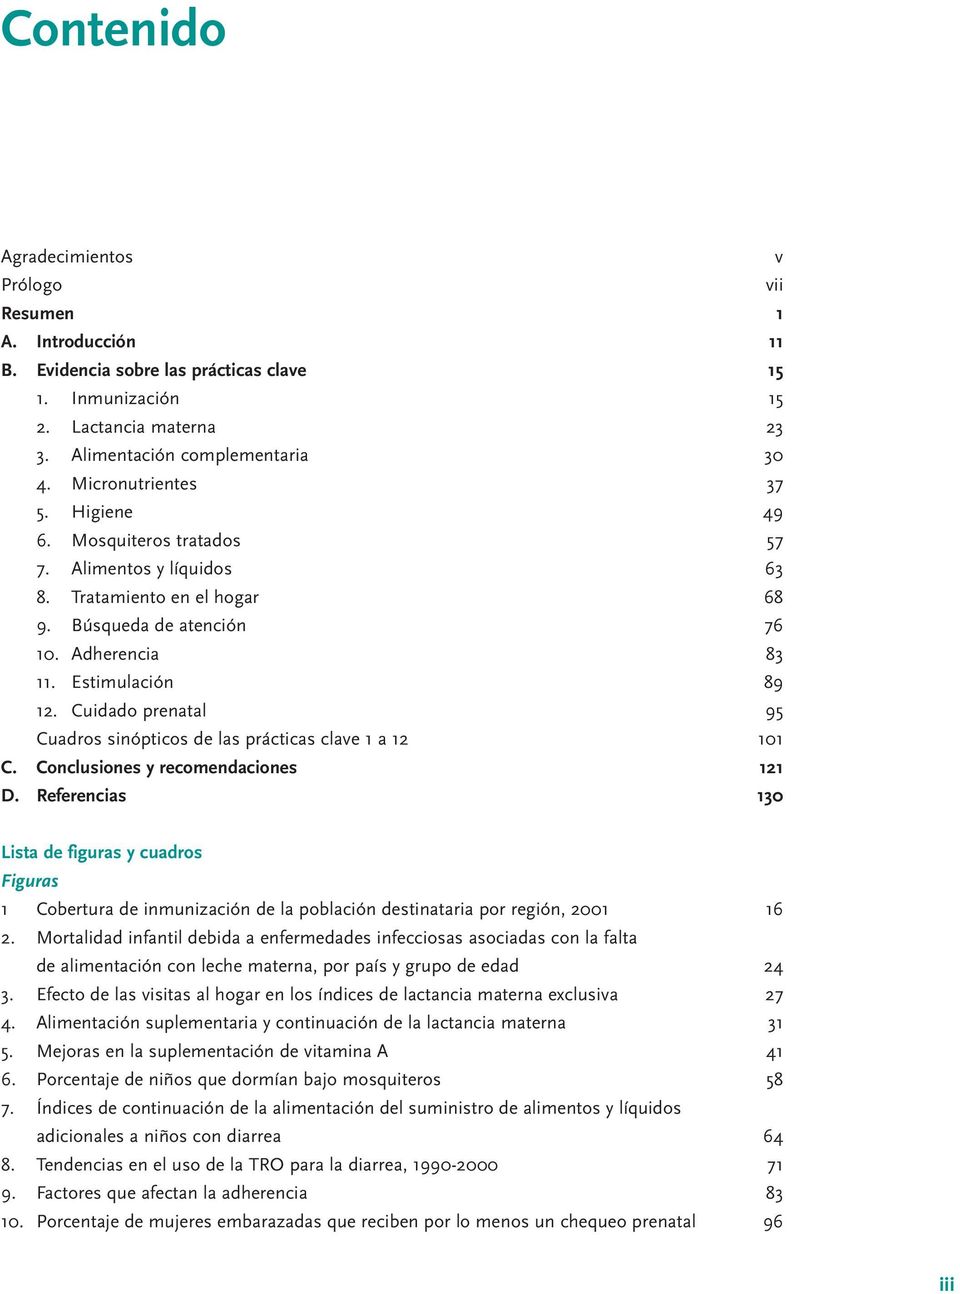 Cuidado prenatal 95 Cuadros sinópticos de las prácticas clave 1 a 12 101 C. Conclusiones y recomendaciones 121 D.